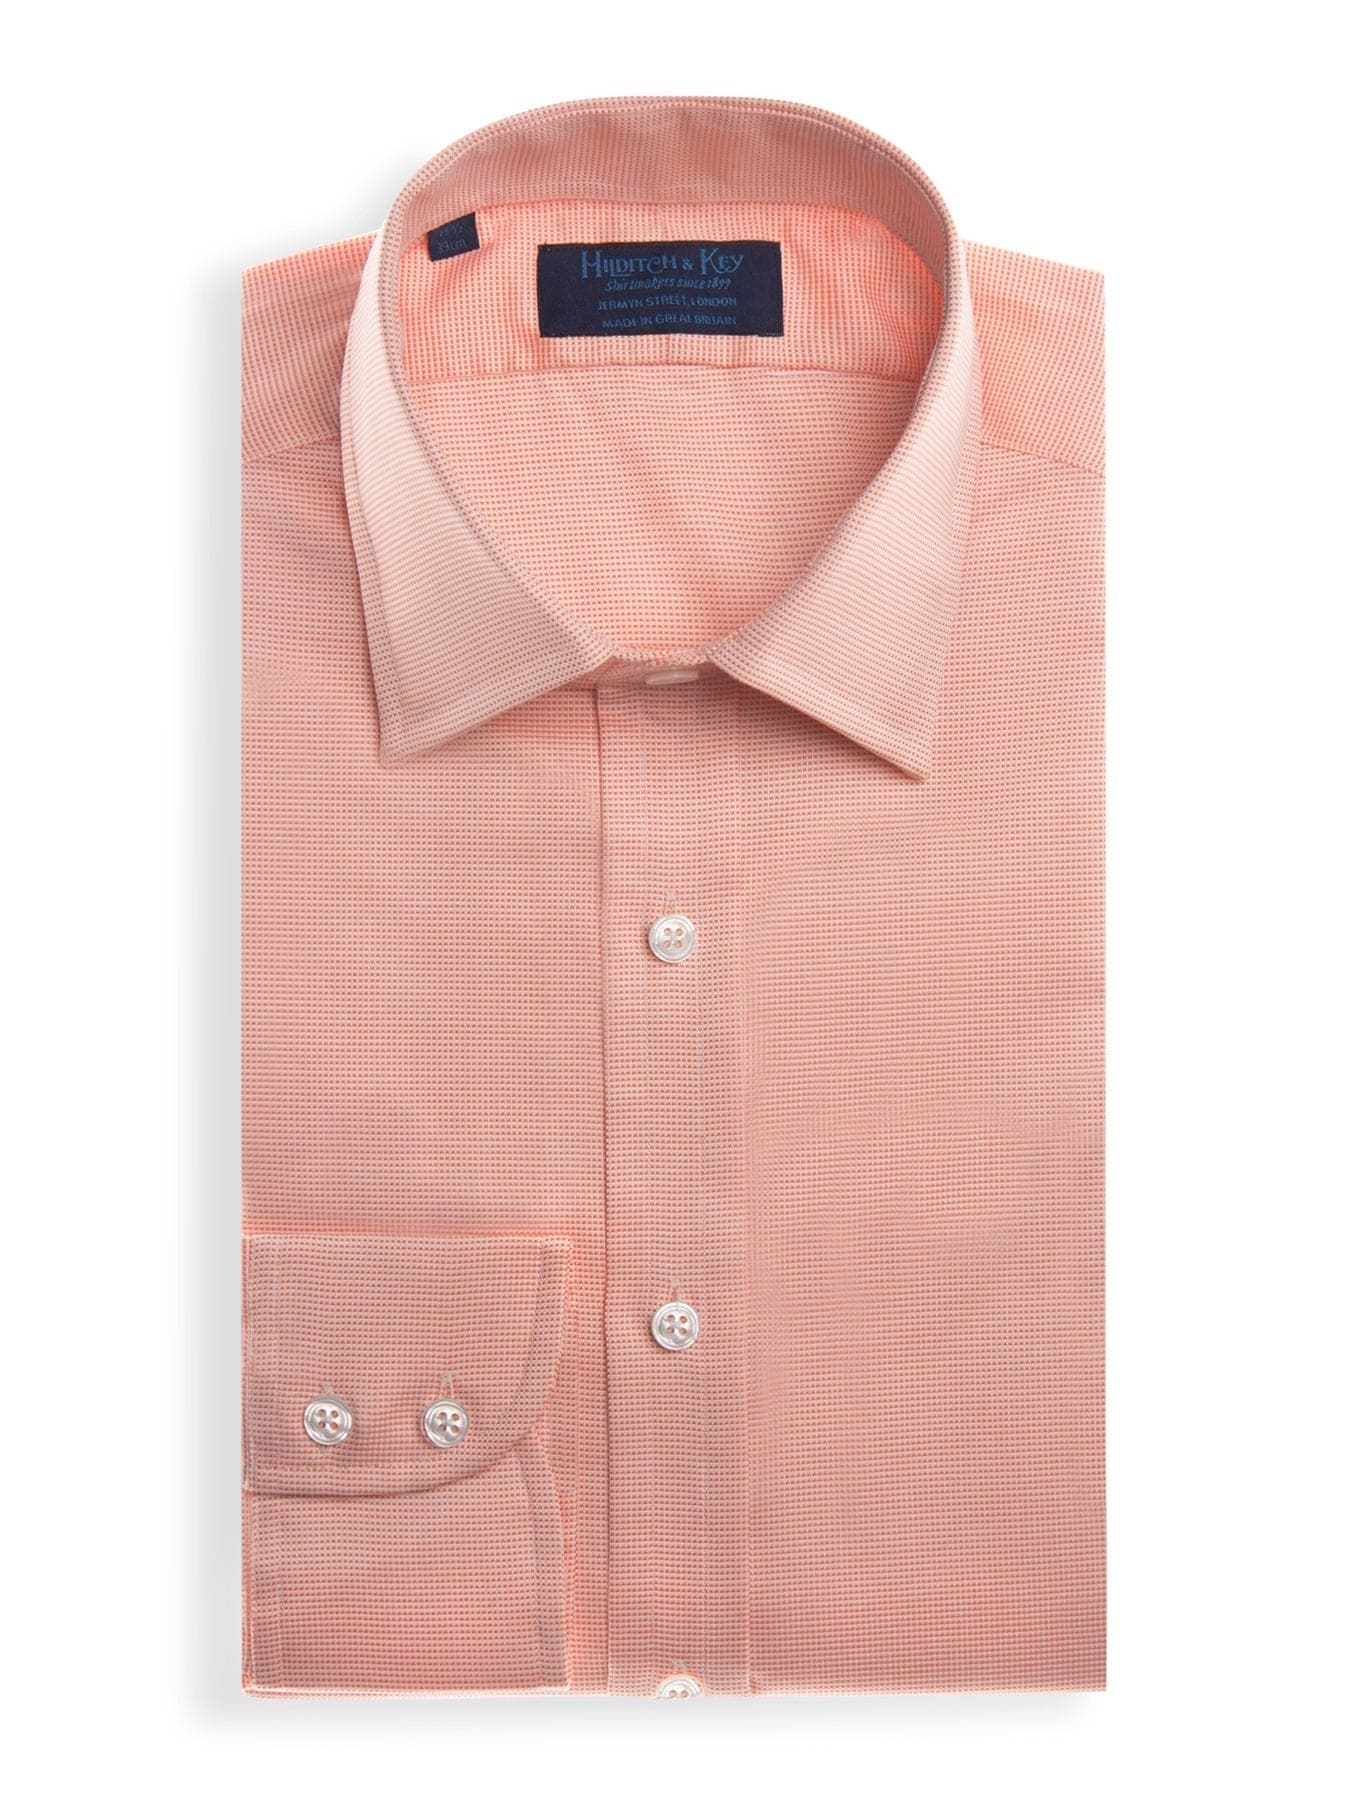 Contemporary Fit, Classic Collar, Two Button Cuff in Orange & White Check